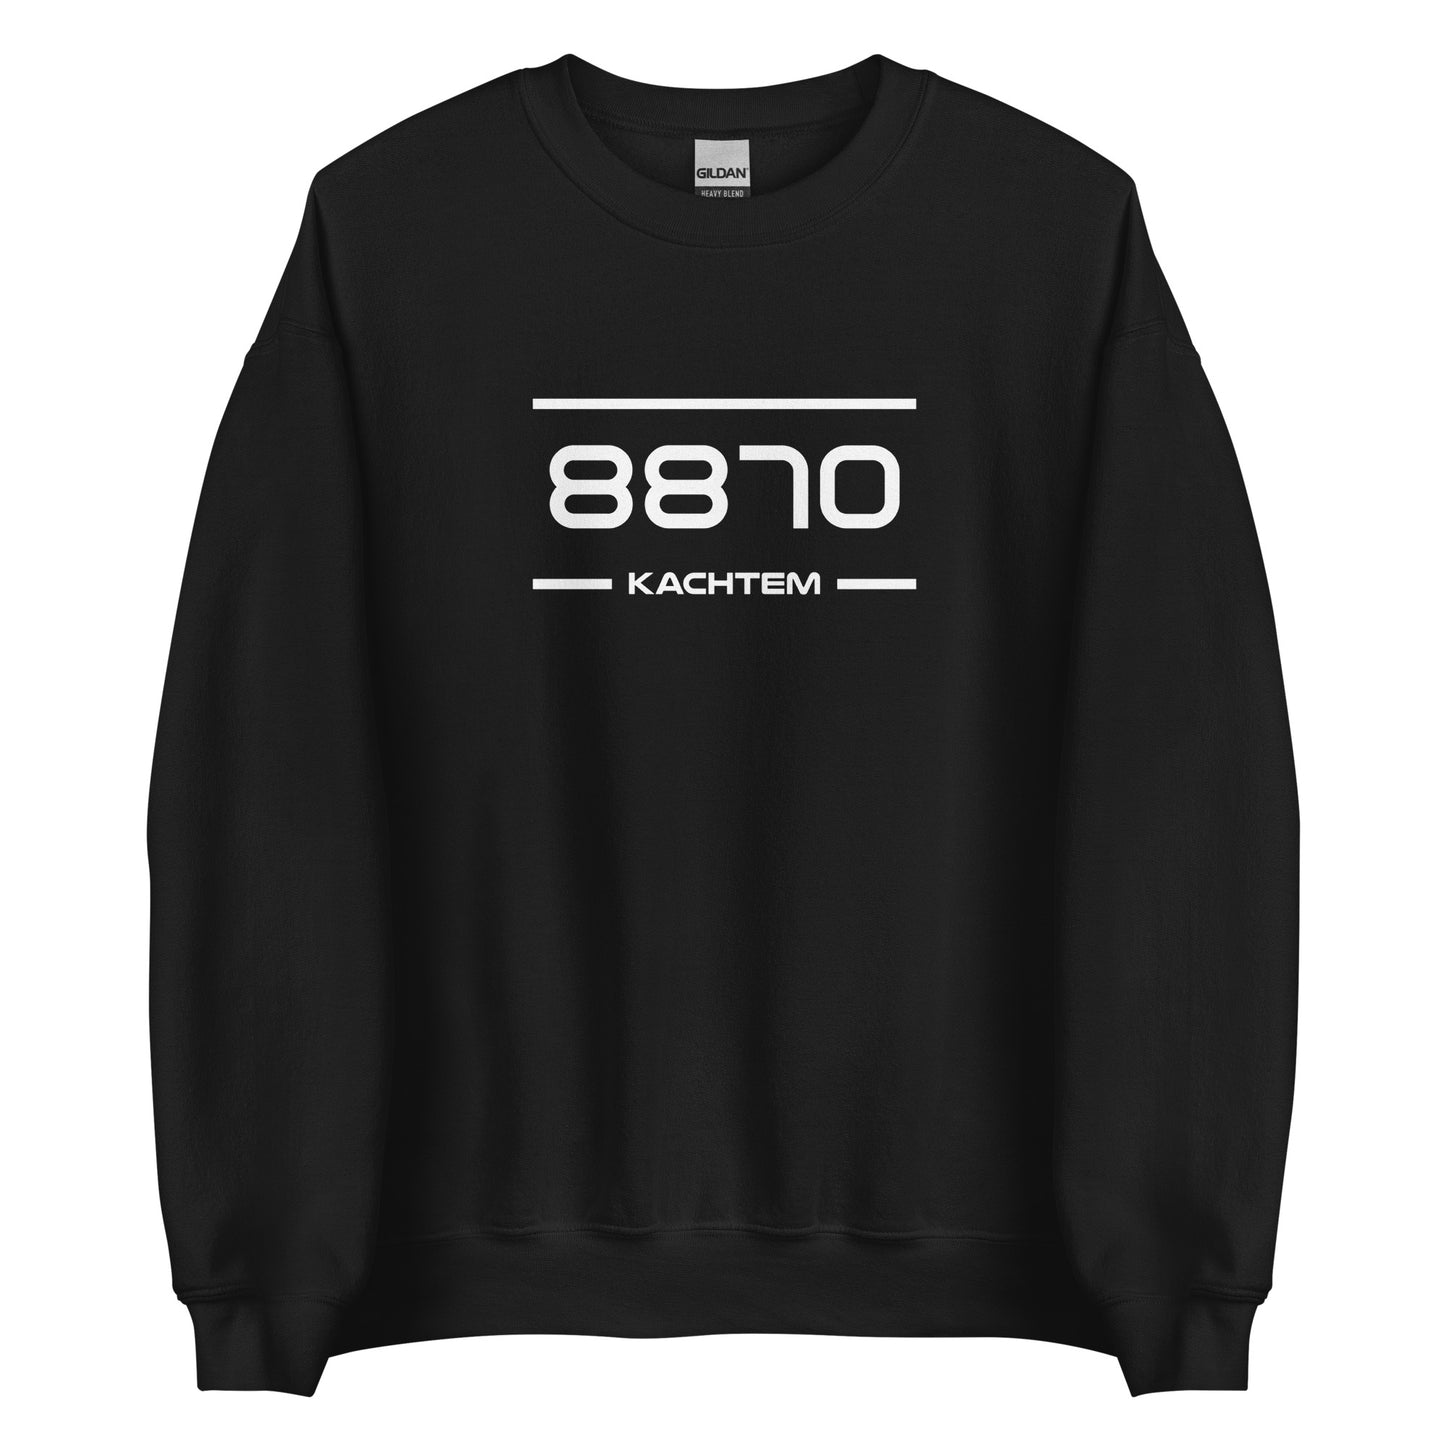 Sweater - 8870 - Kachtem (M/V)